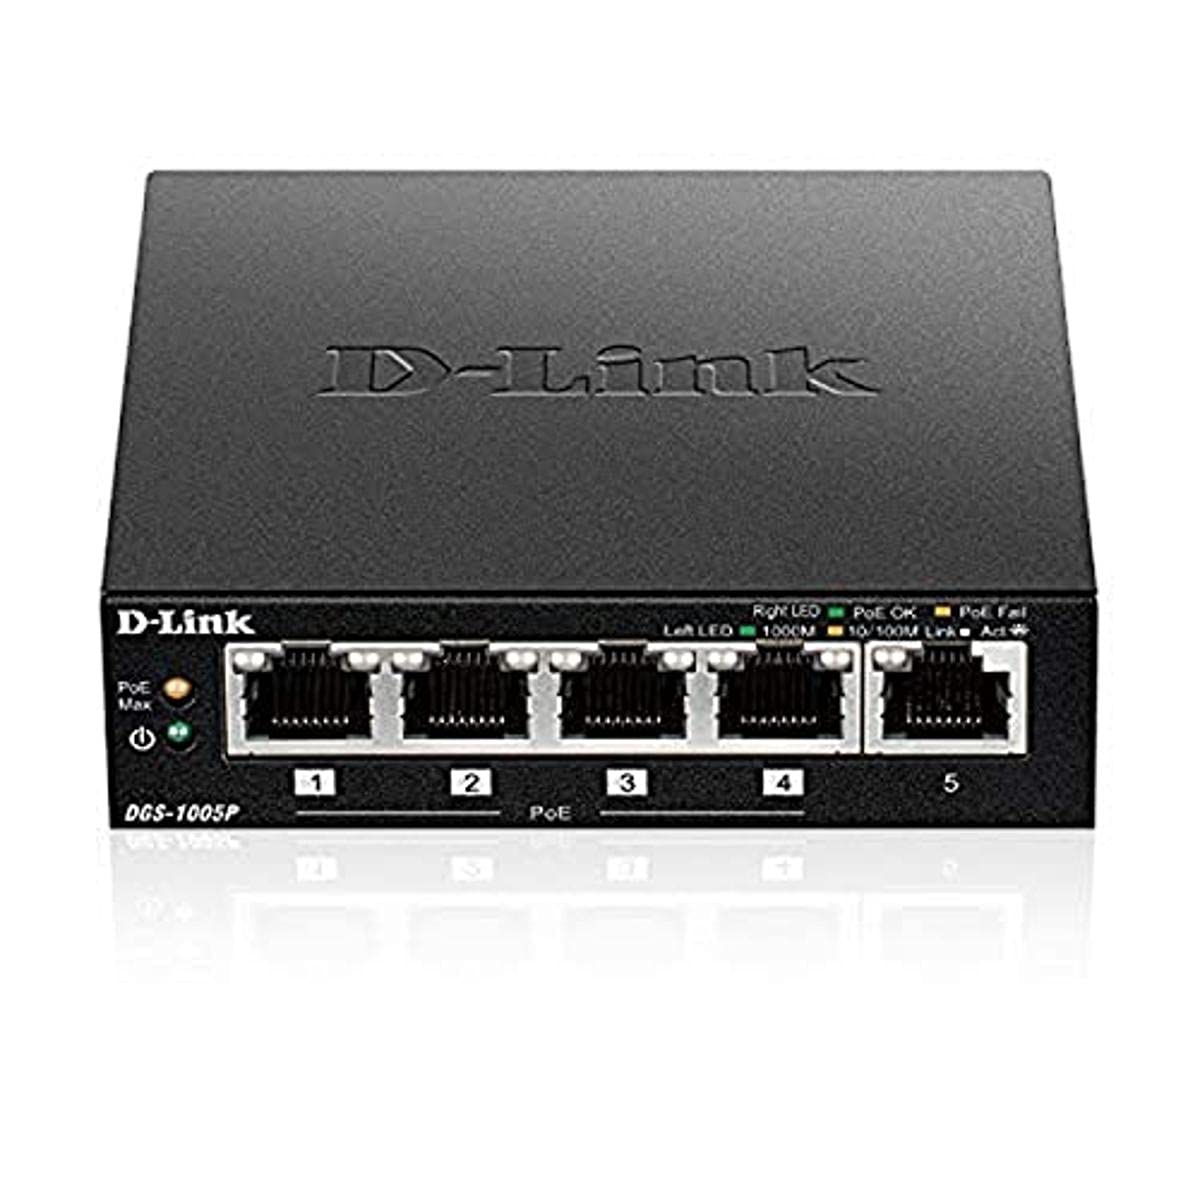 D-Link DGS-1005P, 5-Port Unmanaged PoE+ Gigabit Switch (4 x 10/100/1000 Mbit/s BaseT PoE Port, 1 x 10/100/1000 Mbit/s BaseT Port, 60W PoE Kapazität, Plug & Play, lüfterlos, Metallgehäuse)